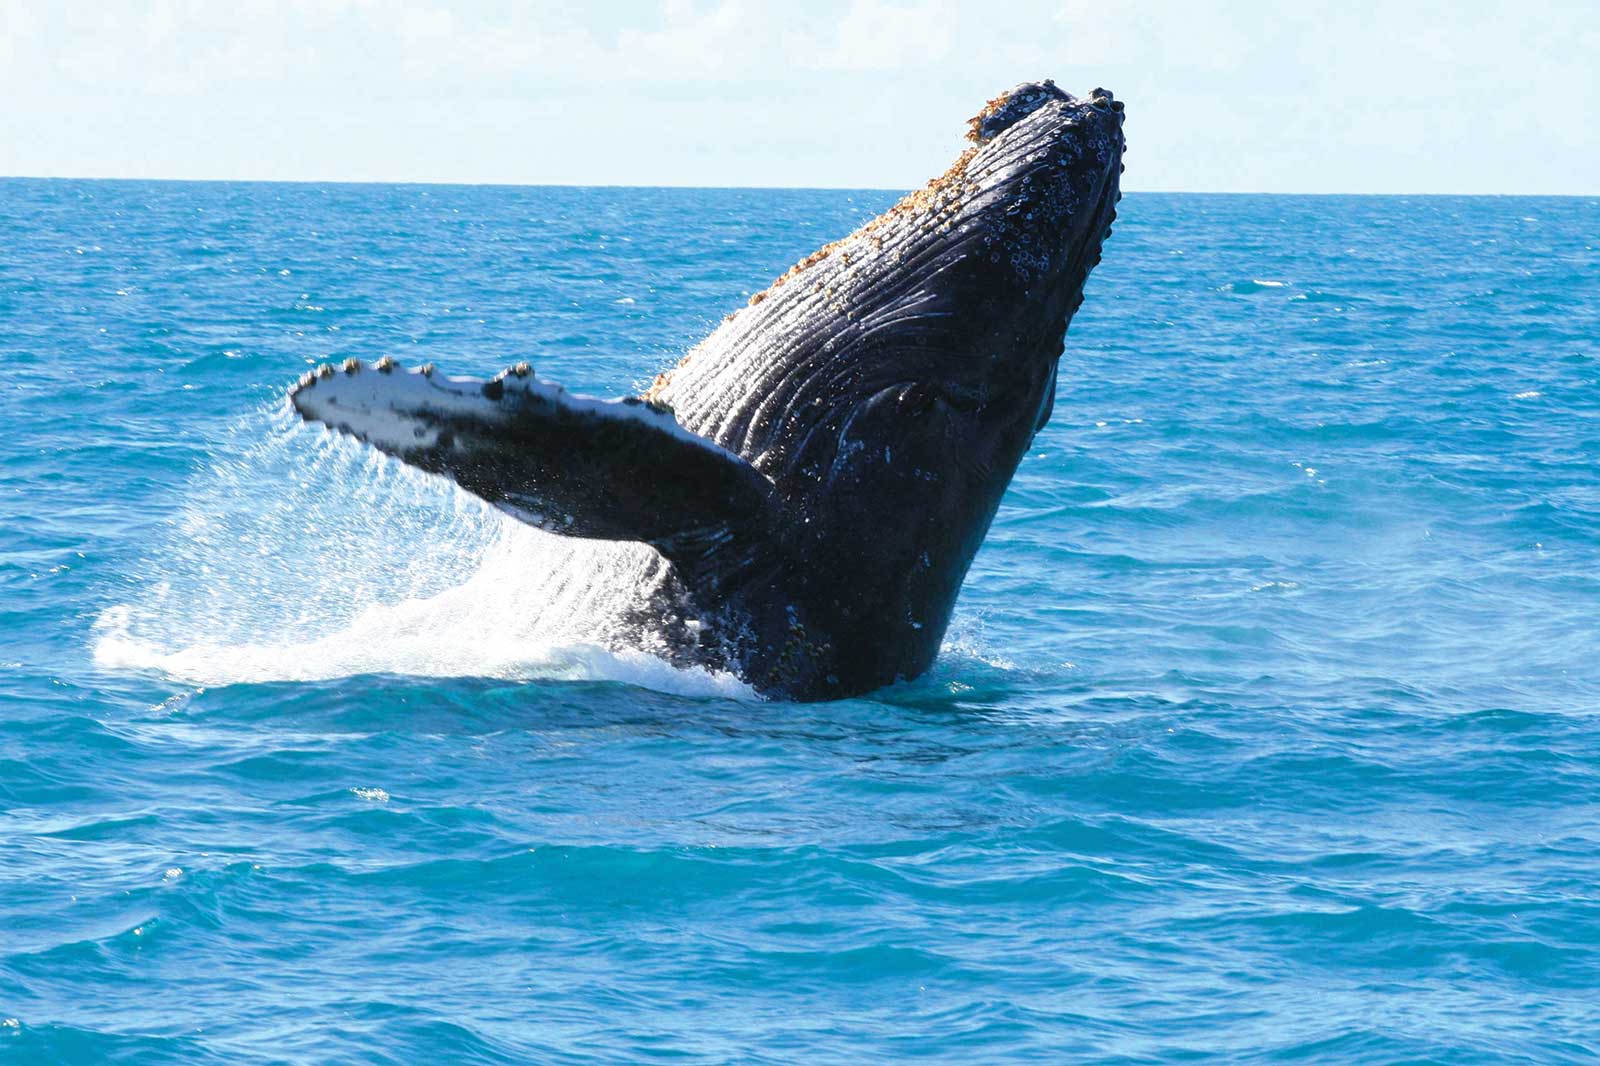 Observer les baleines et les dauphins dans leur habitat naturel accompagné par des experts locaux de juillet à septembre, période de migration de ces cétacés